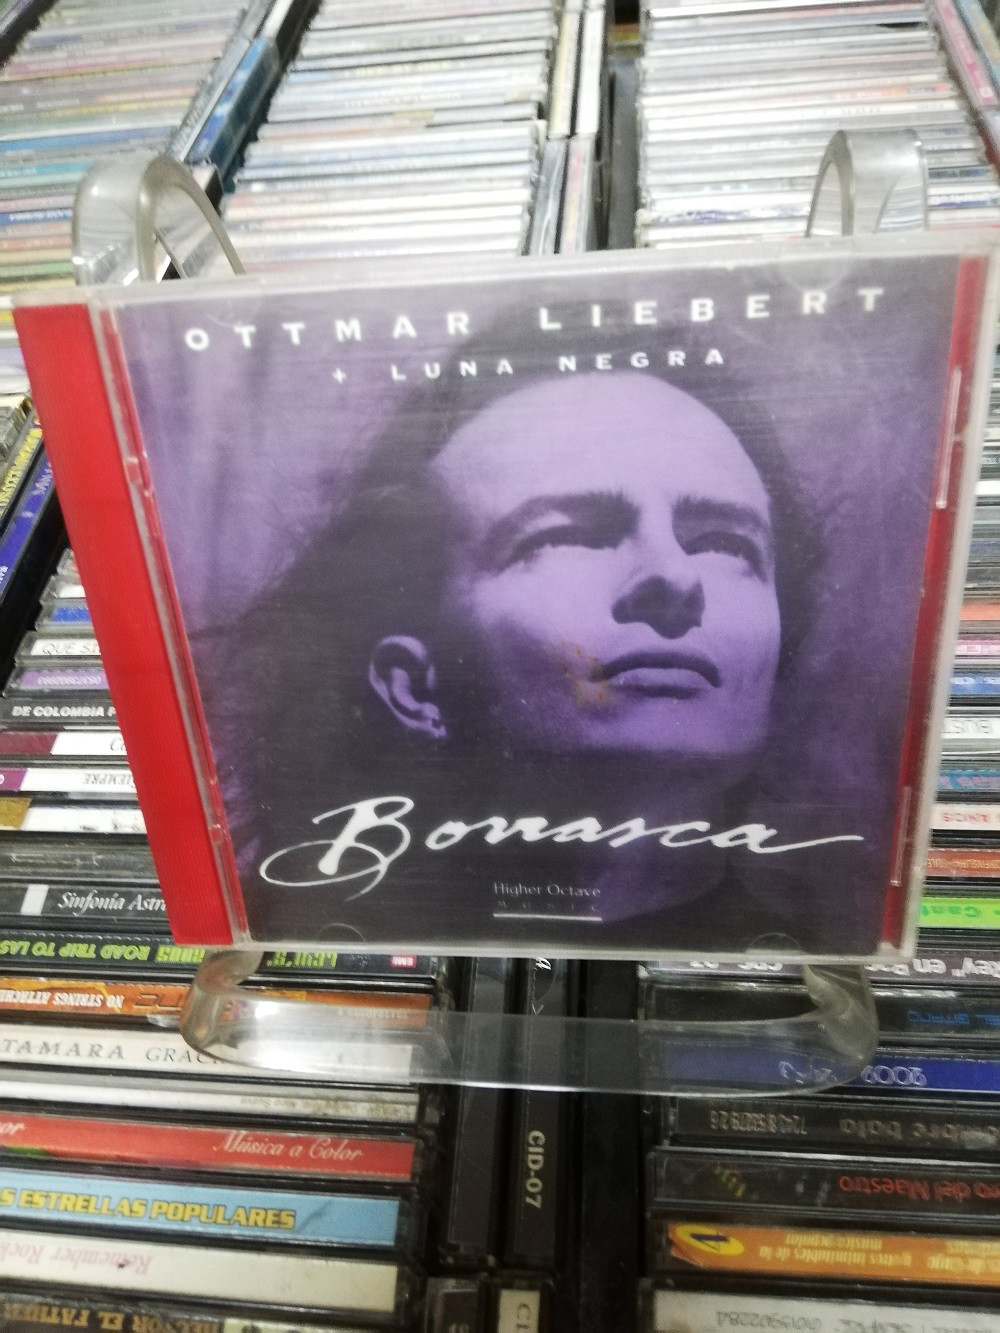 Imagen CD OTTMAR LIEBERT - BORRASCA 1